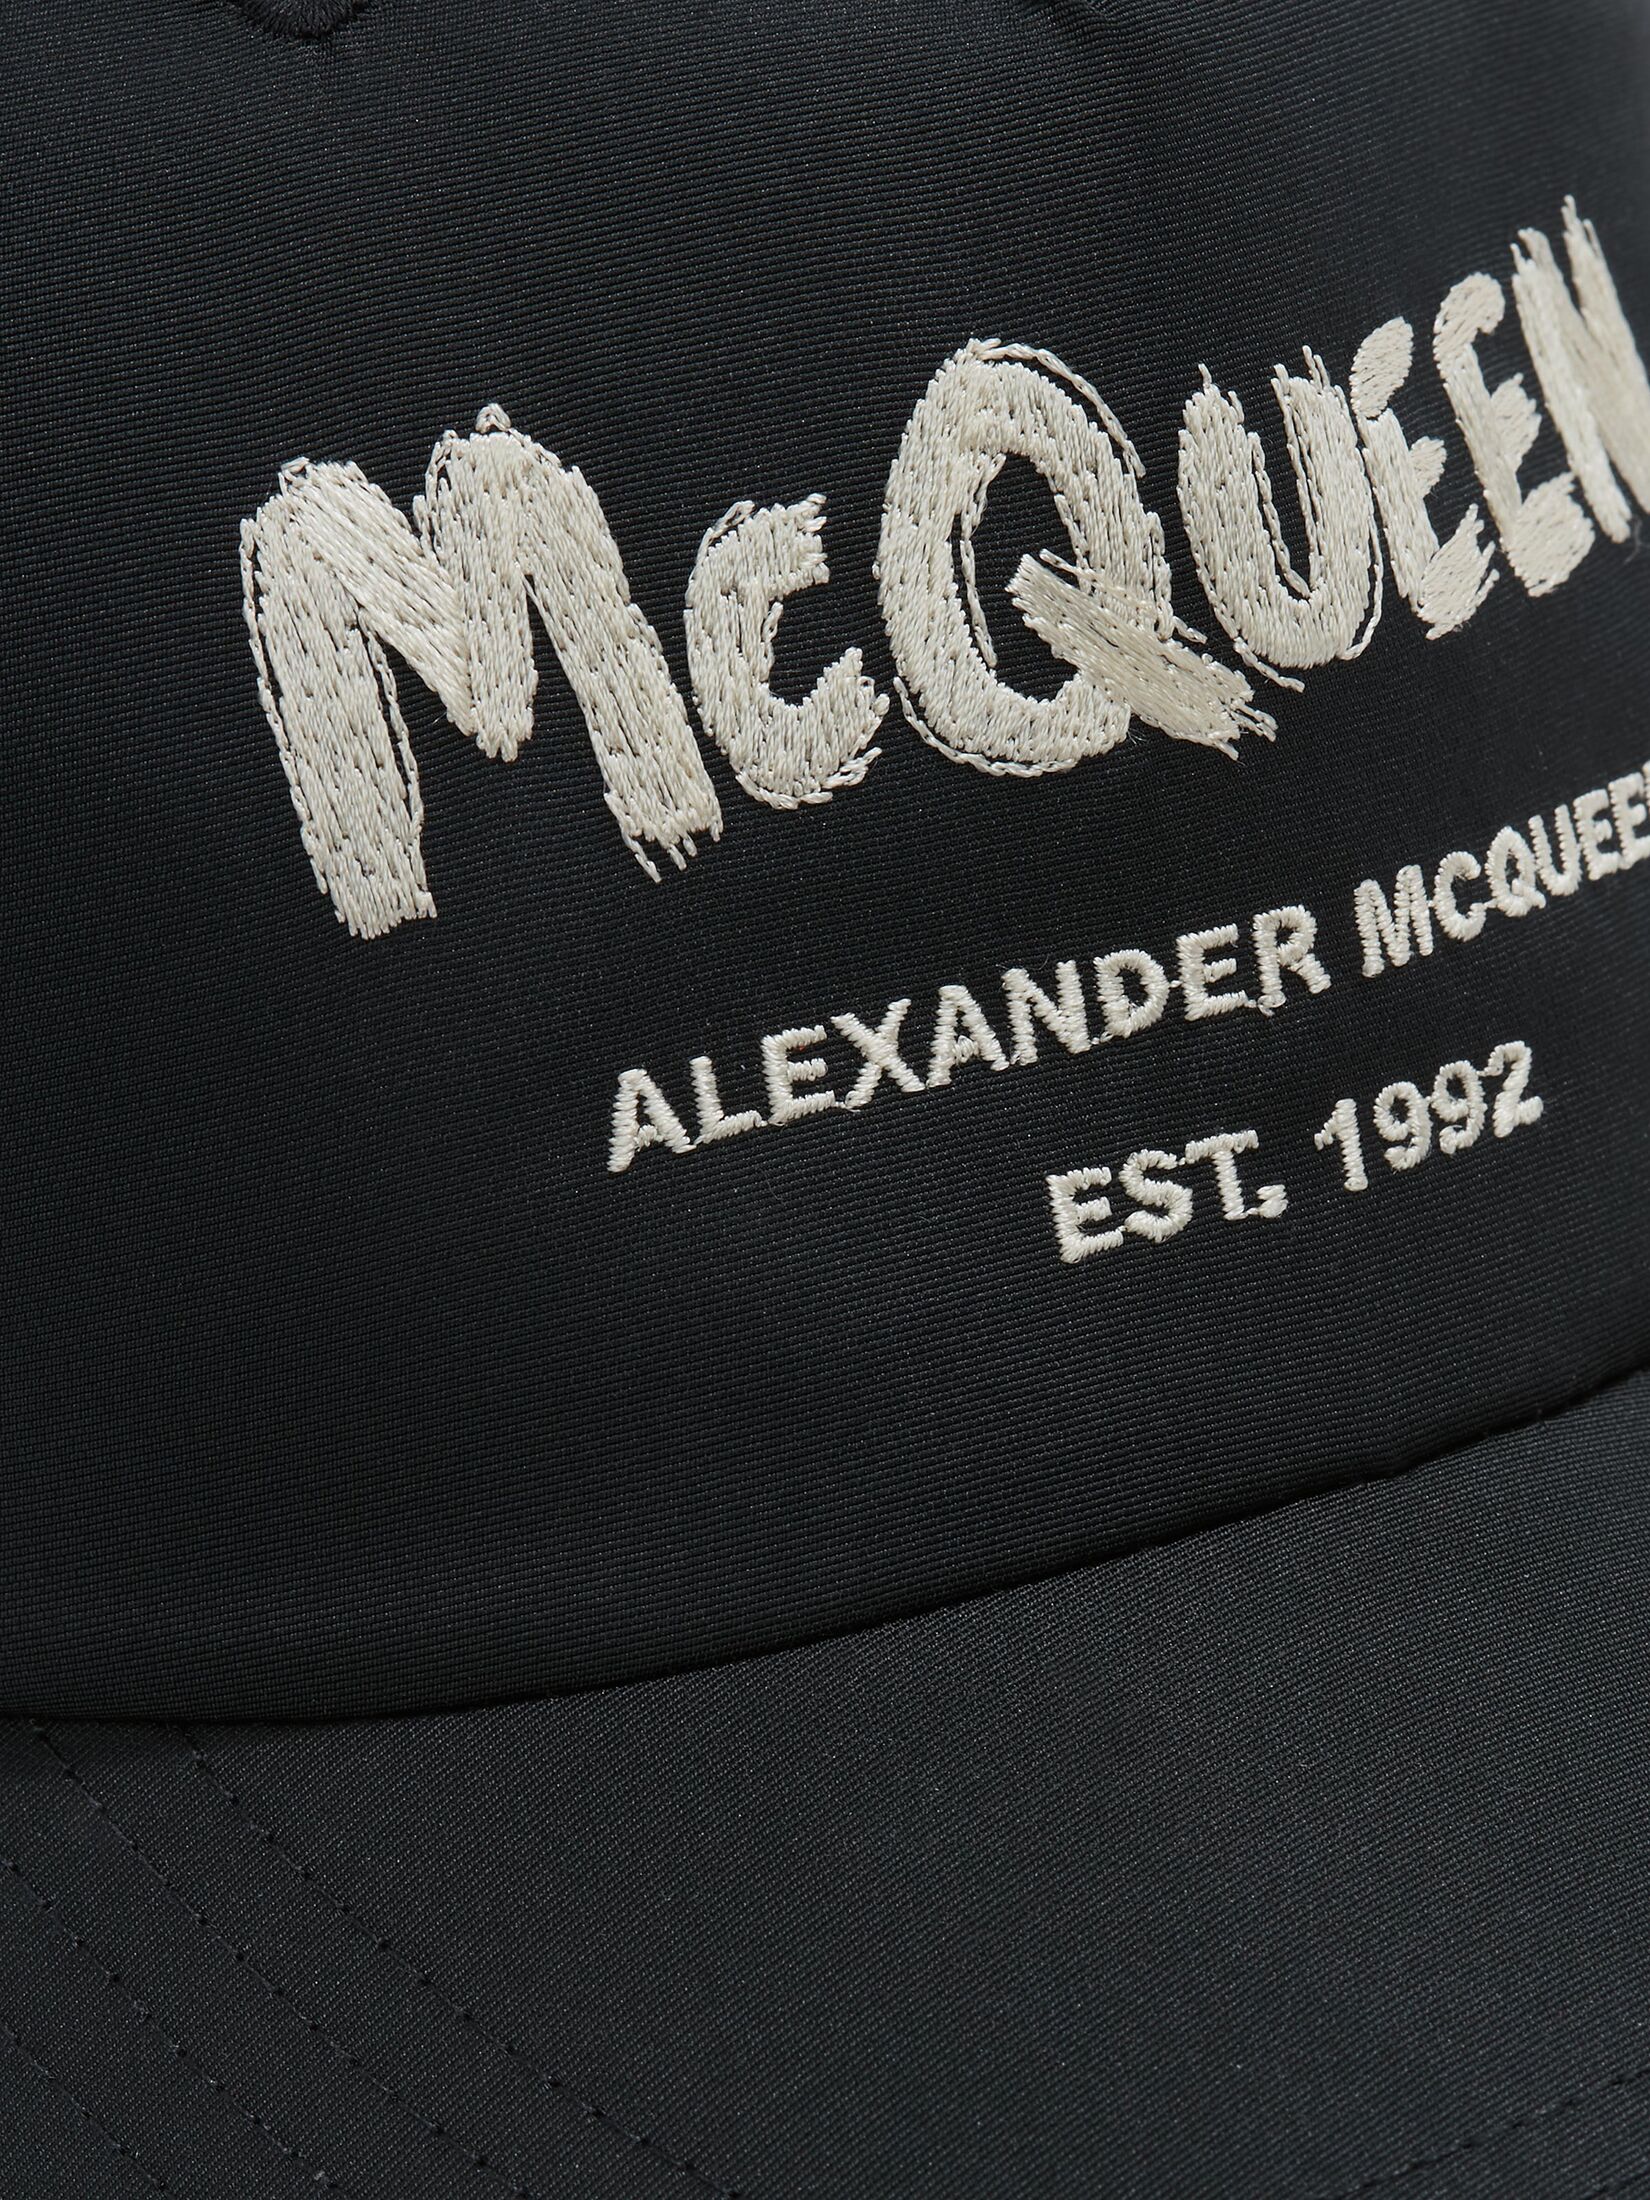 Baseballkappe mit McQueen-Graffitiprint